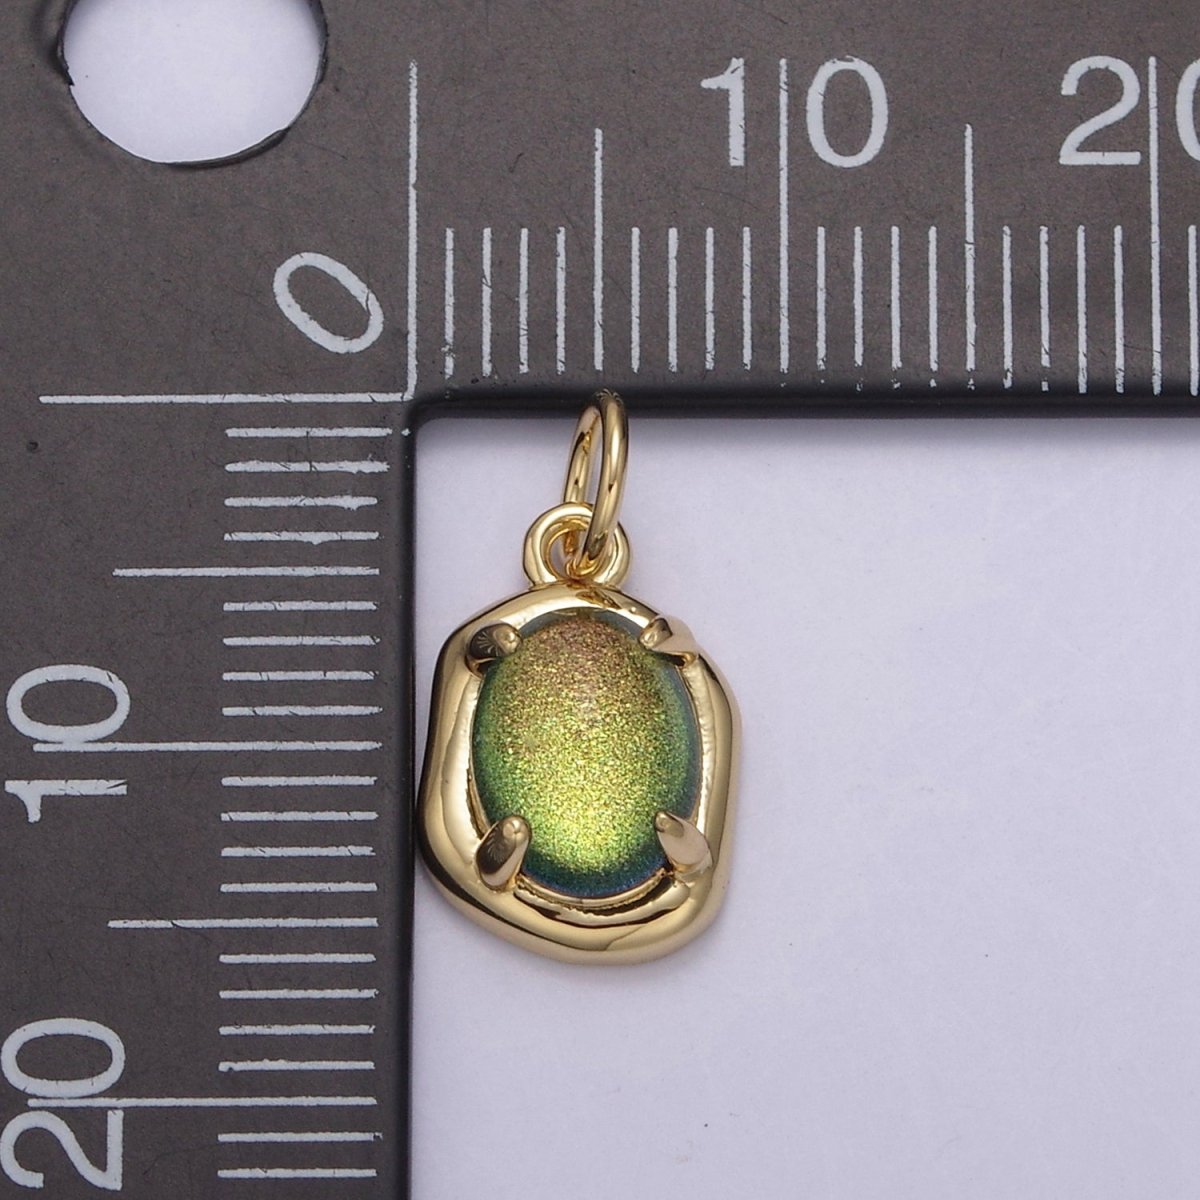 Mini Gold Oval Charm with Opal Stone for Minimalist Jewelry N-464 N-465 N-466 N-467 - DLUXCA